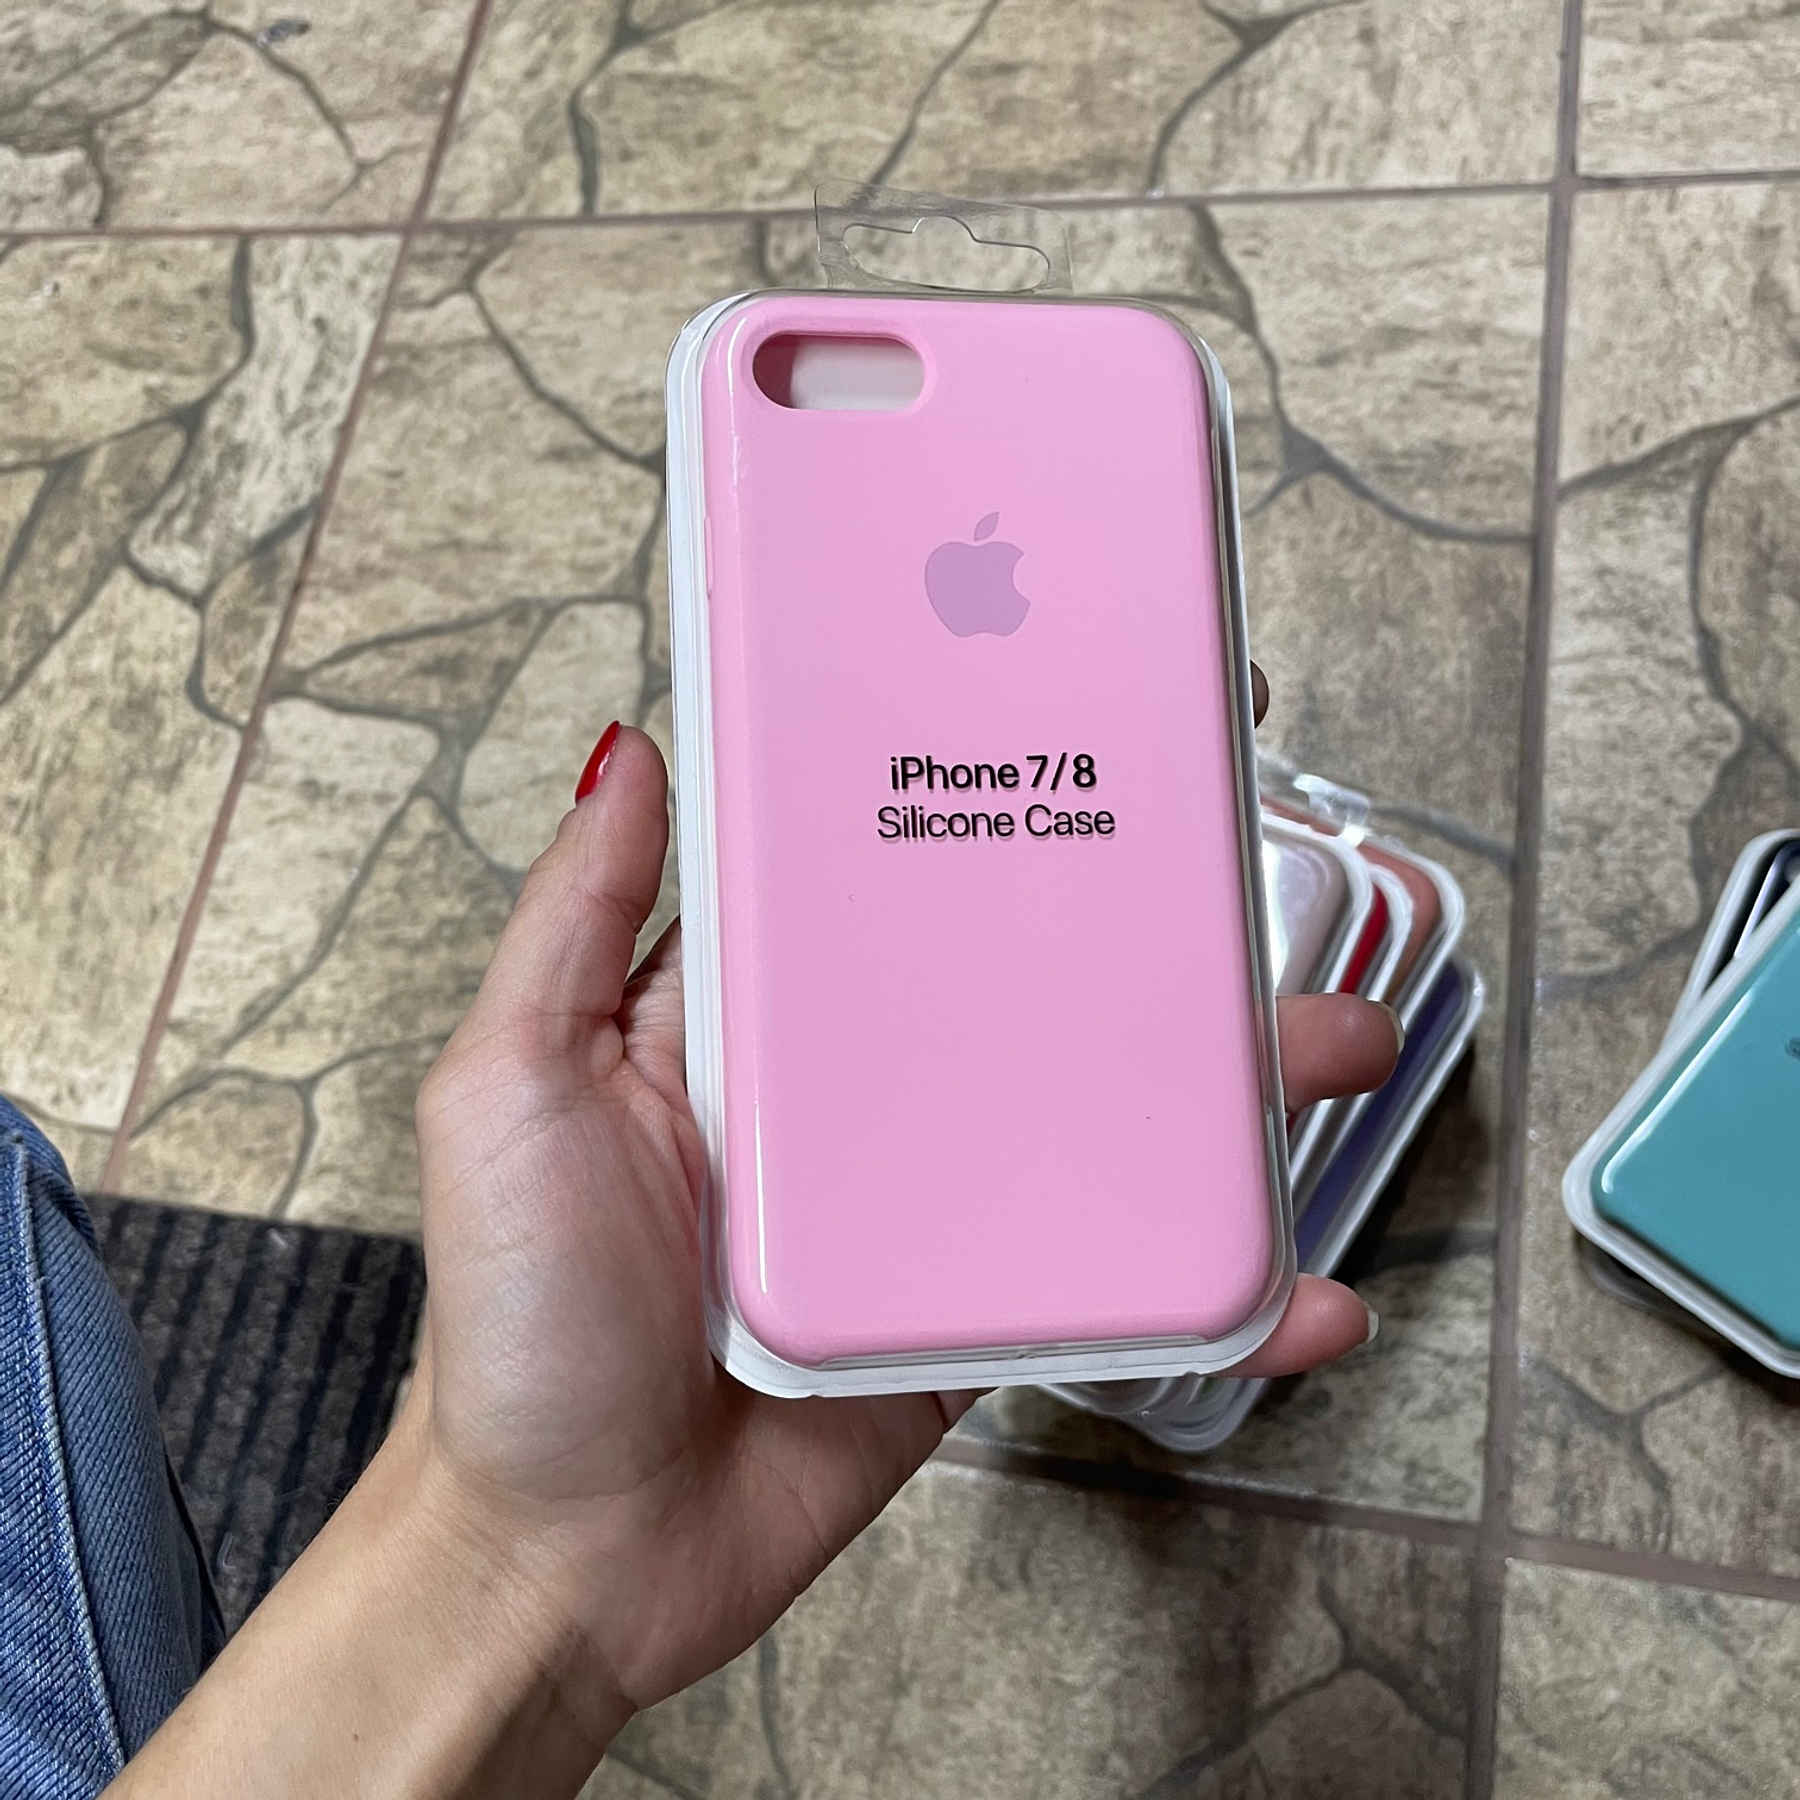 Carcasa iPhone 7/8 Rosa